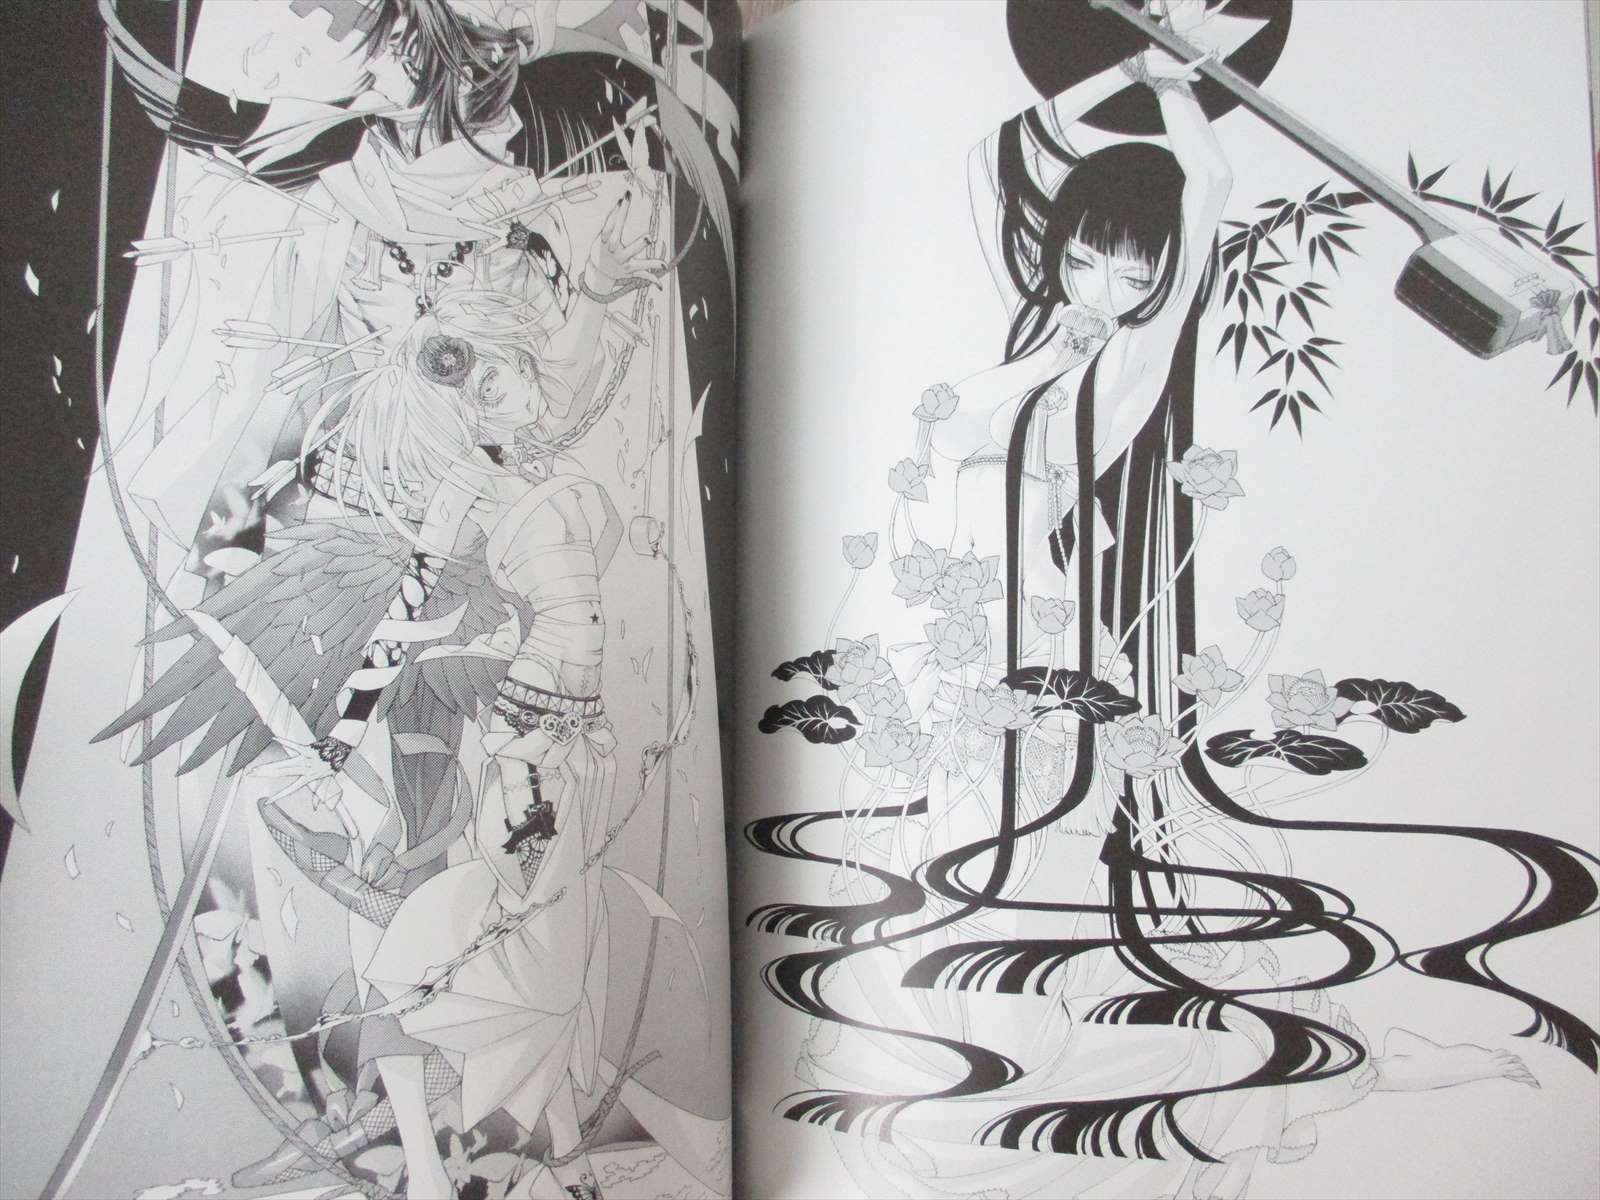 Kiyo Qjo Illustration Zone 00 Art Design Works 9 Japan Book 15 Kd Ebay